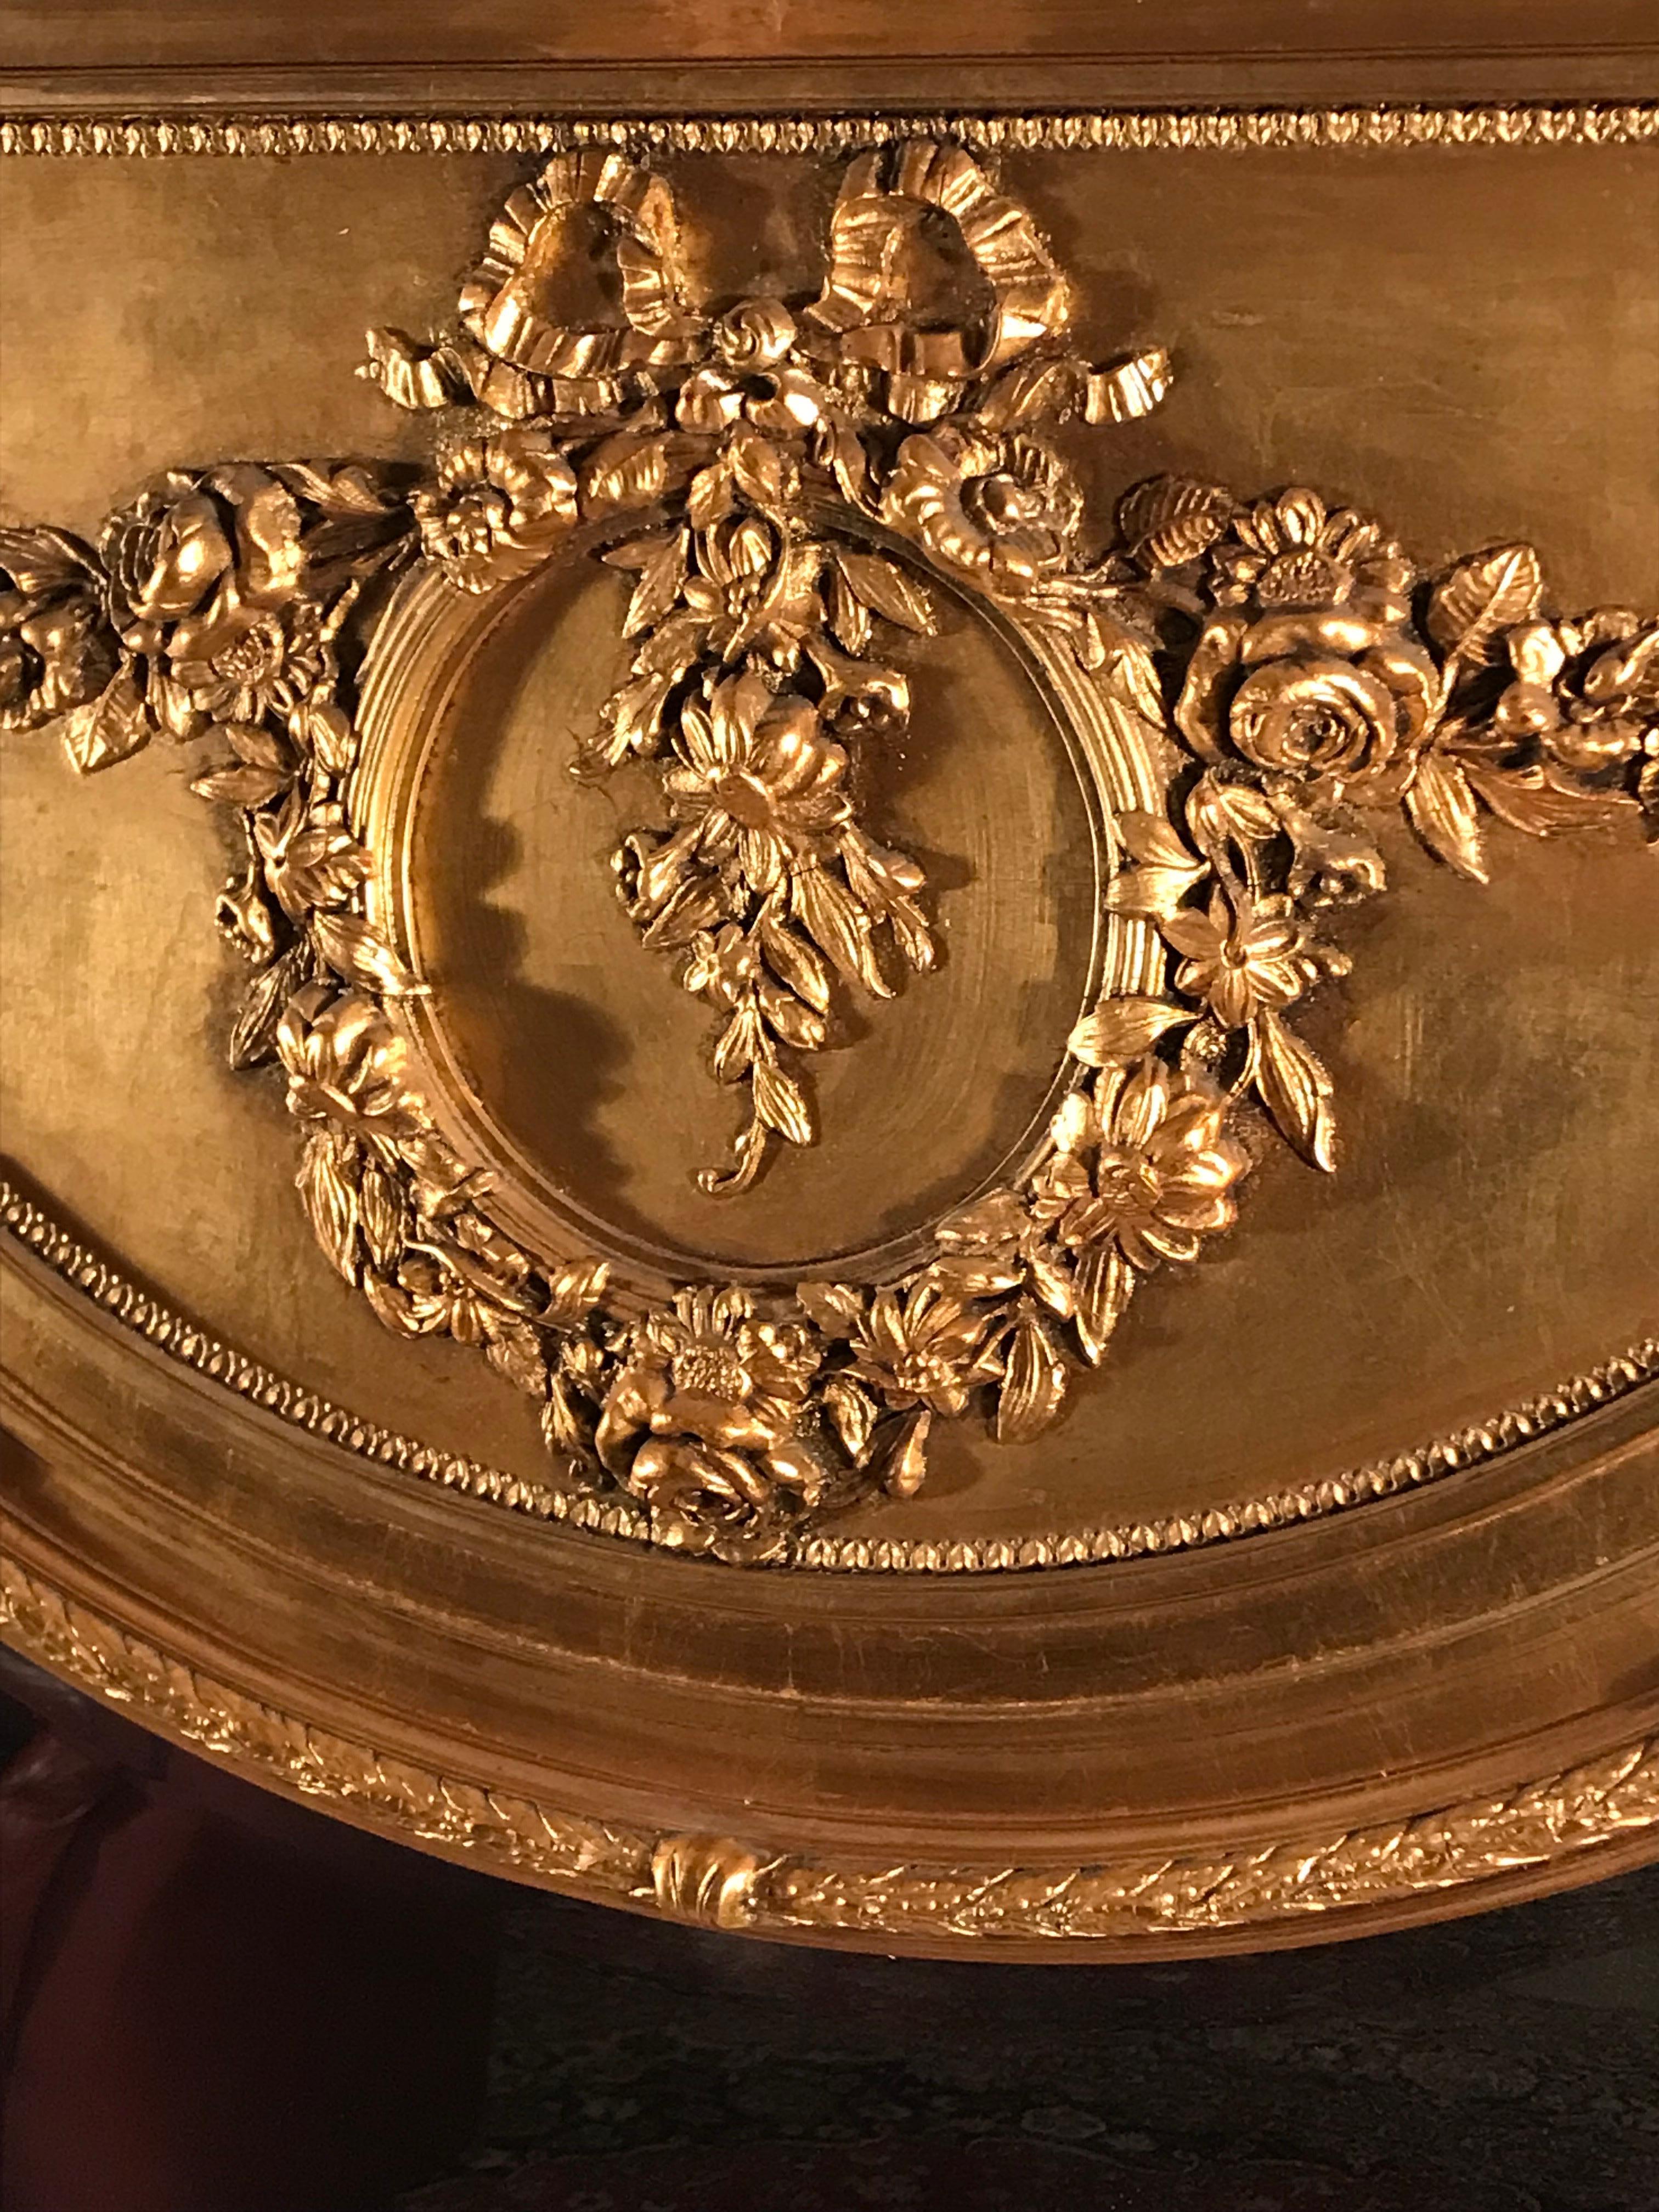 Cet impressionnant miroir à trumeau de style Louis XVI se distingue par sa belle décoration de fleurs et de feuilles. La partie supérieure présente une magnifique guirlande de fleurs/roses avec un médaillon central. Le miroir en bois doré est en